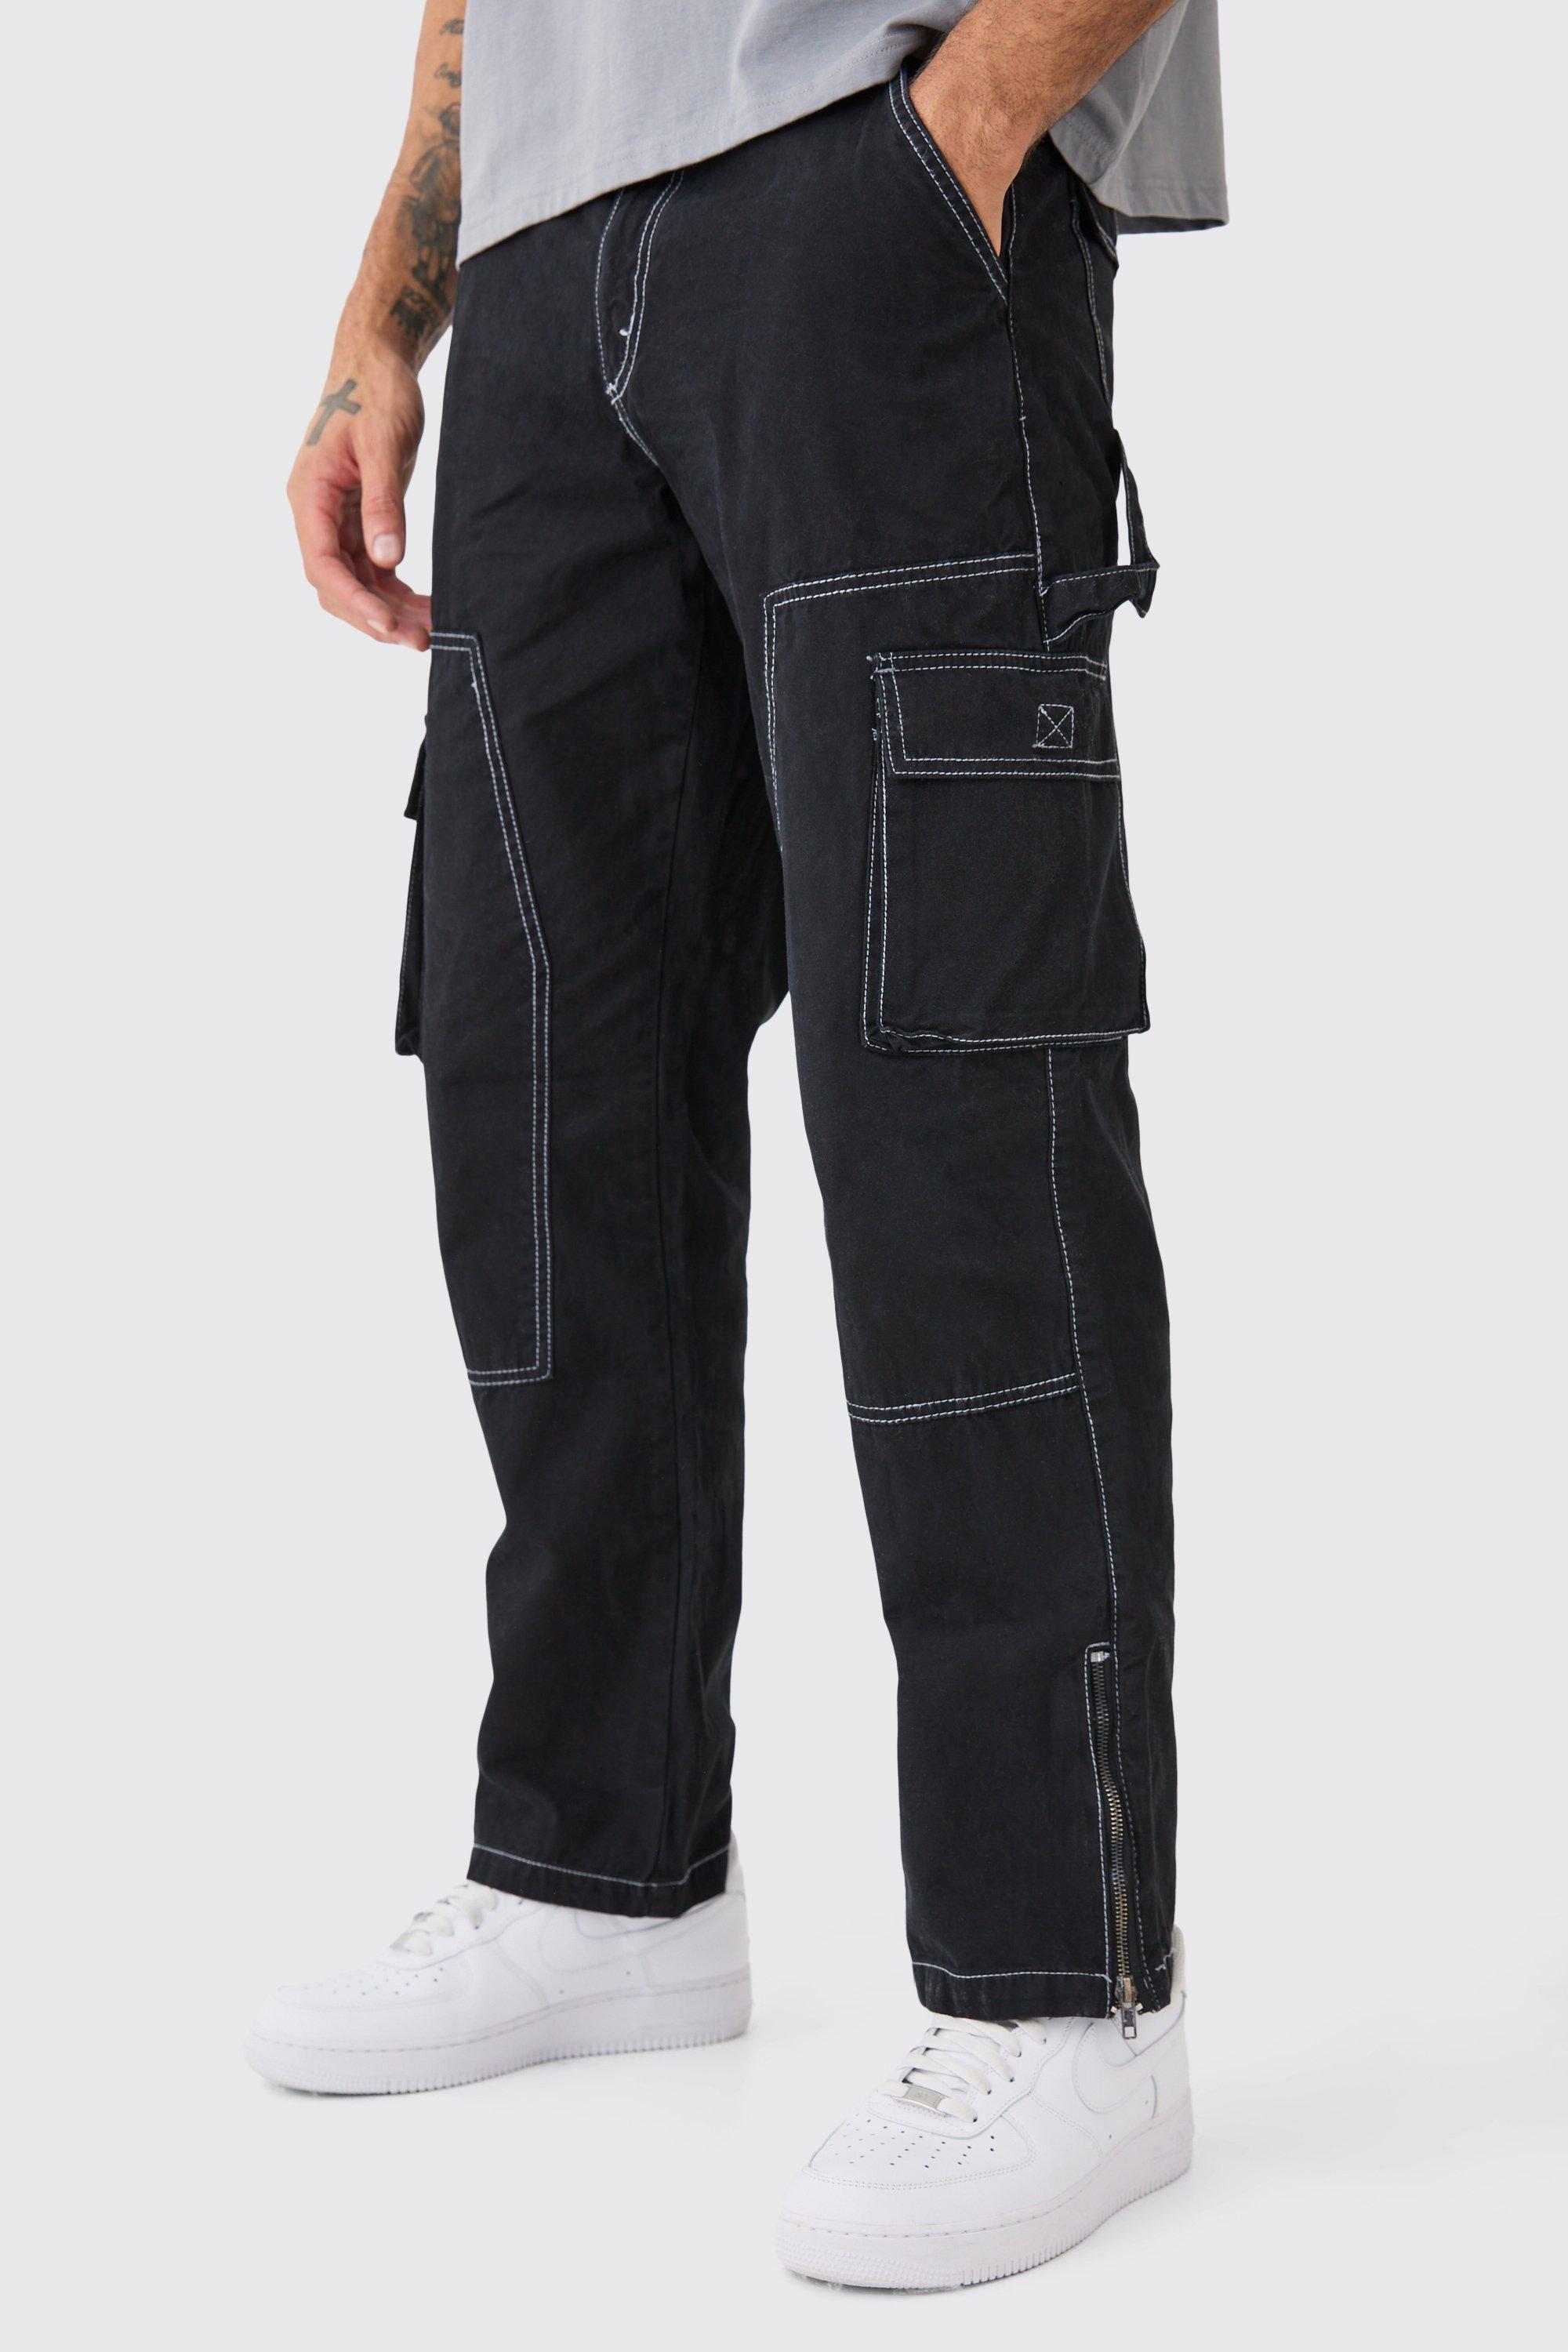 Image of Pantaloni rilassati stile Carpenter con cuciture a contrasto e zip sul fondo, Nero